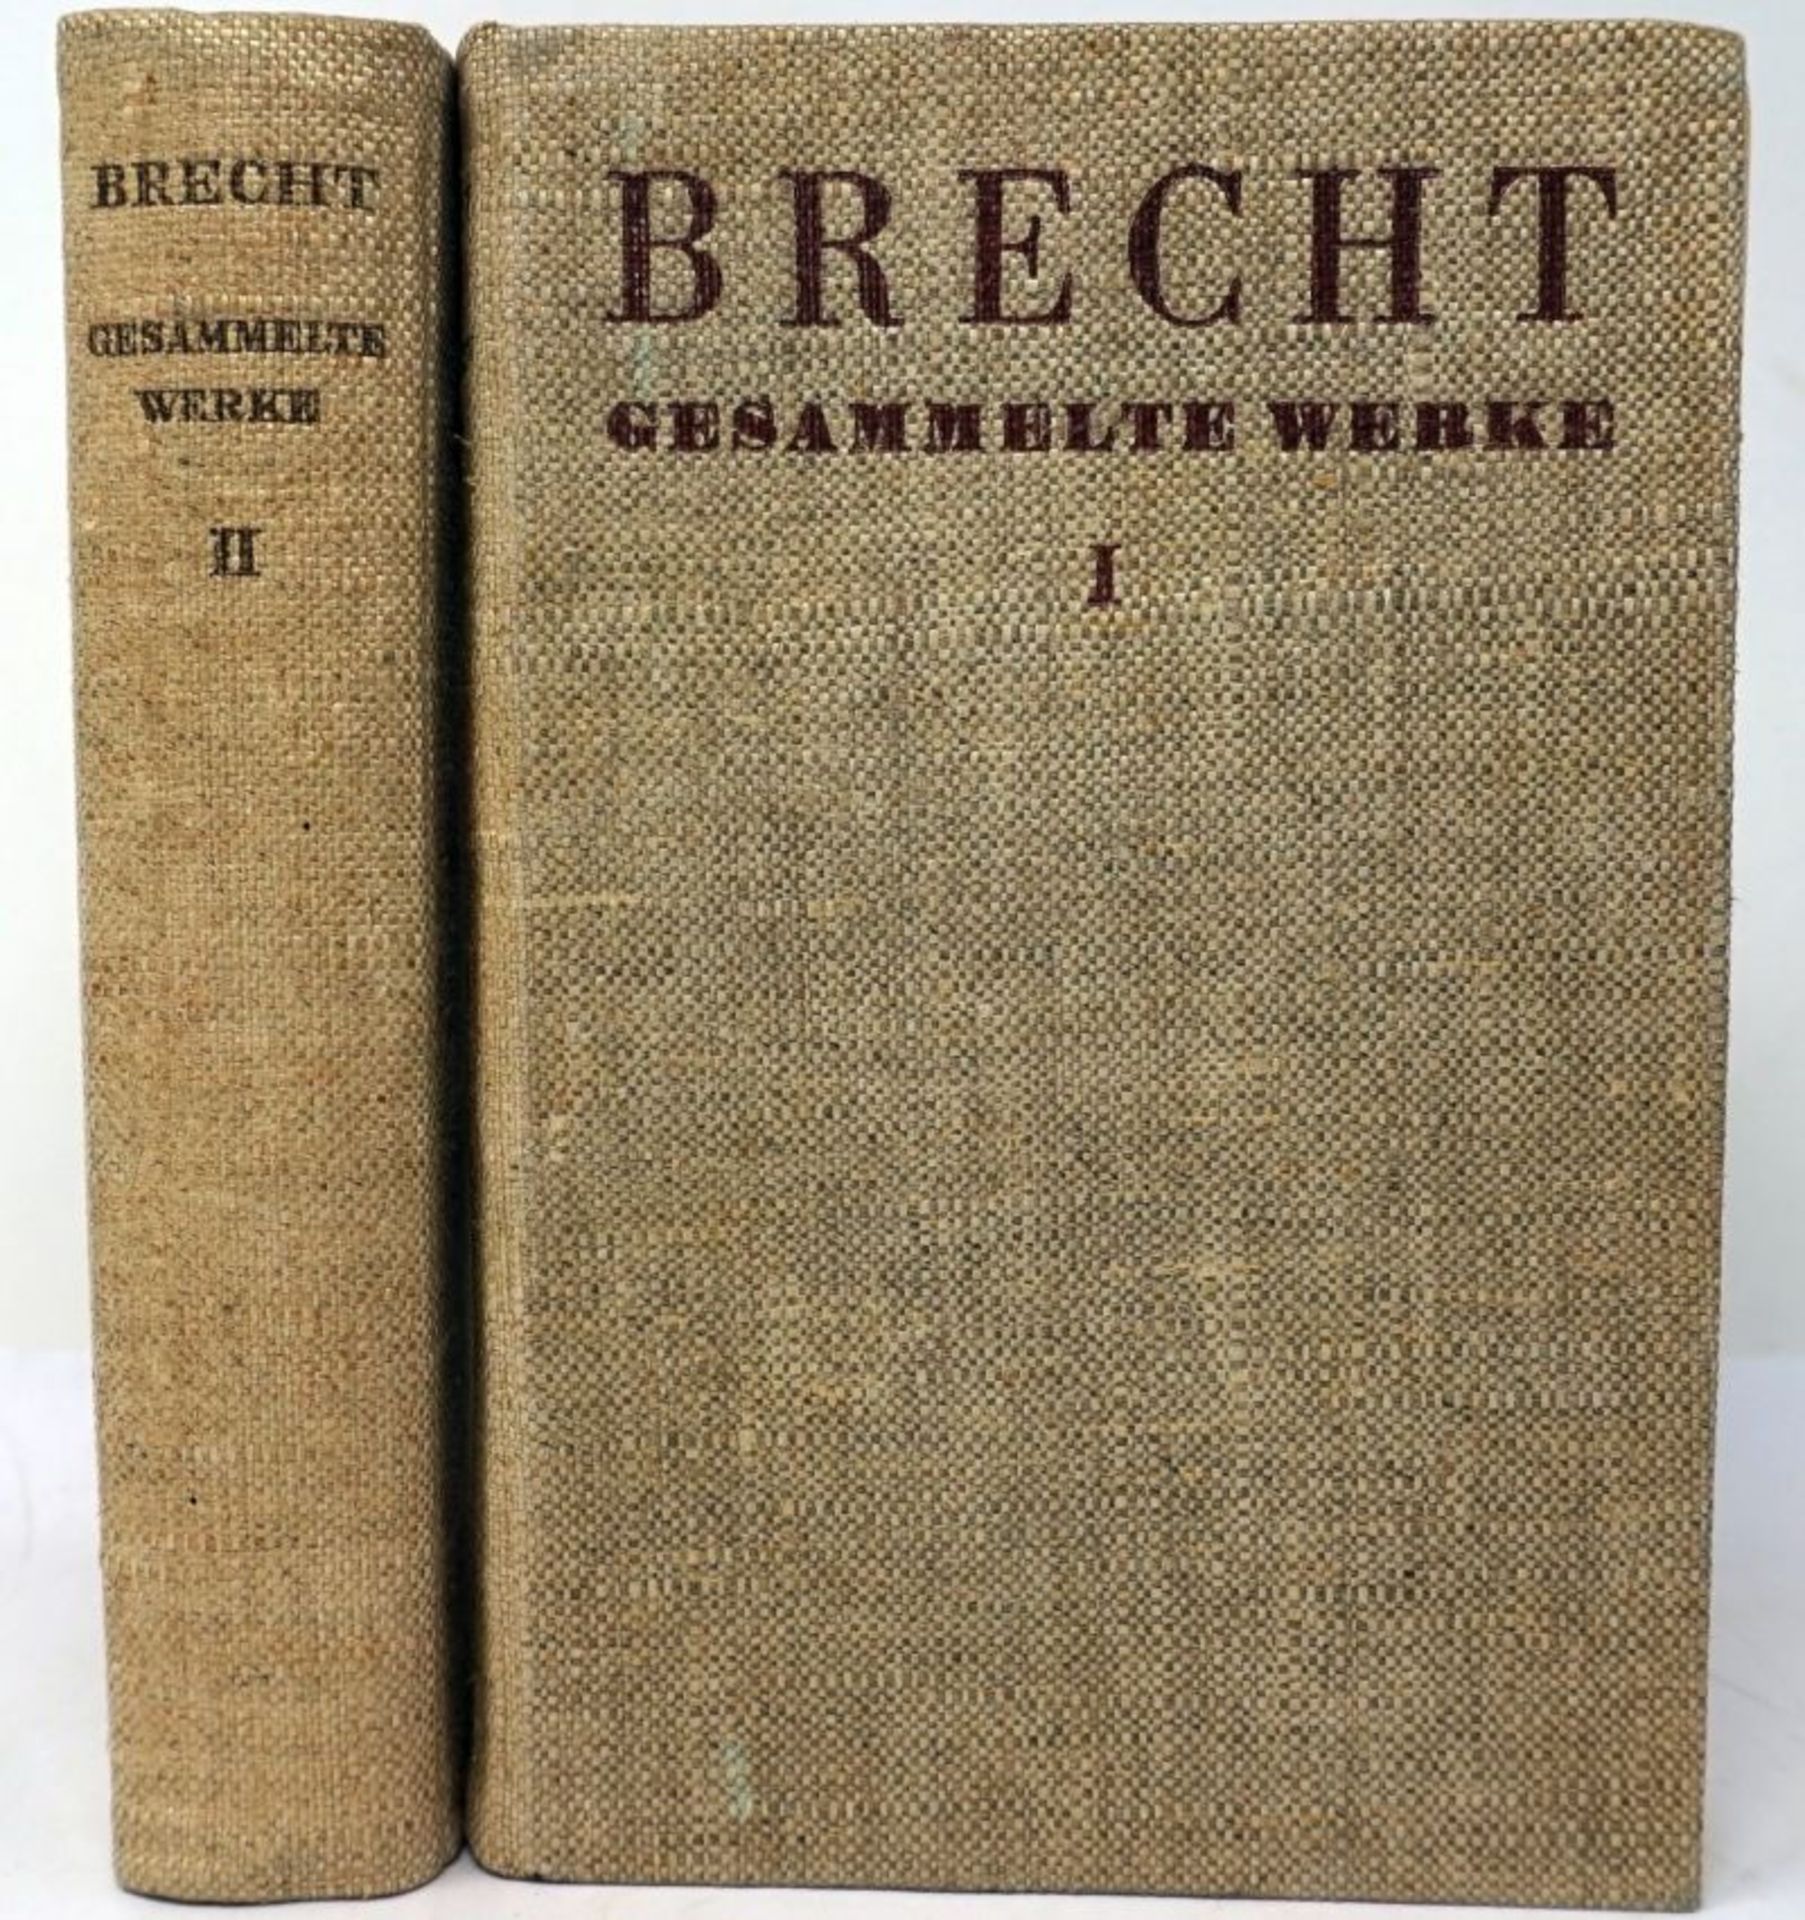 Brecht, Bertolt: Gesammelte Werke